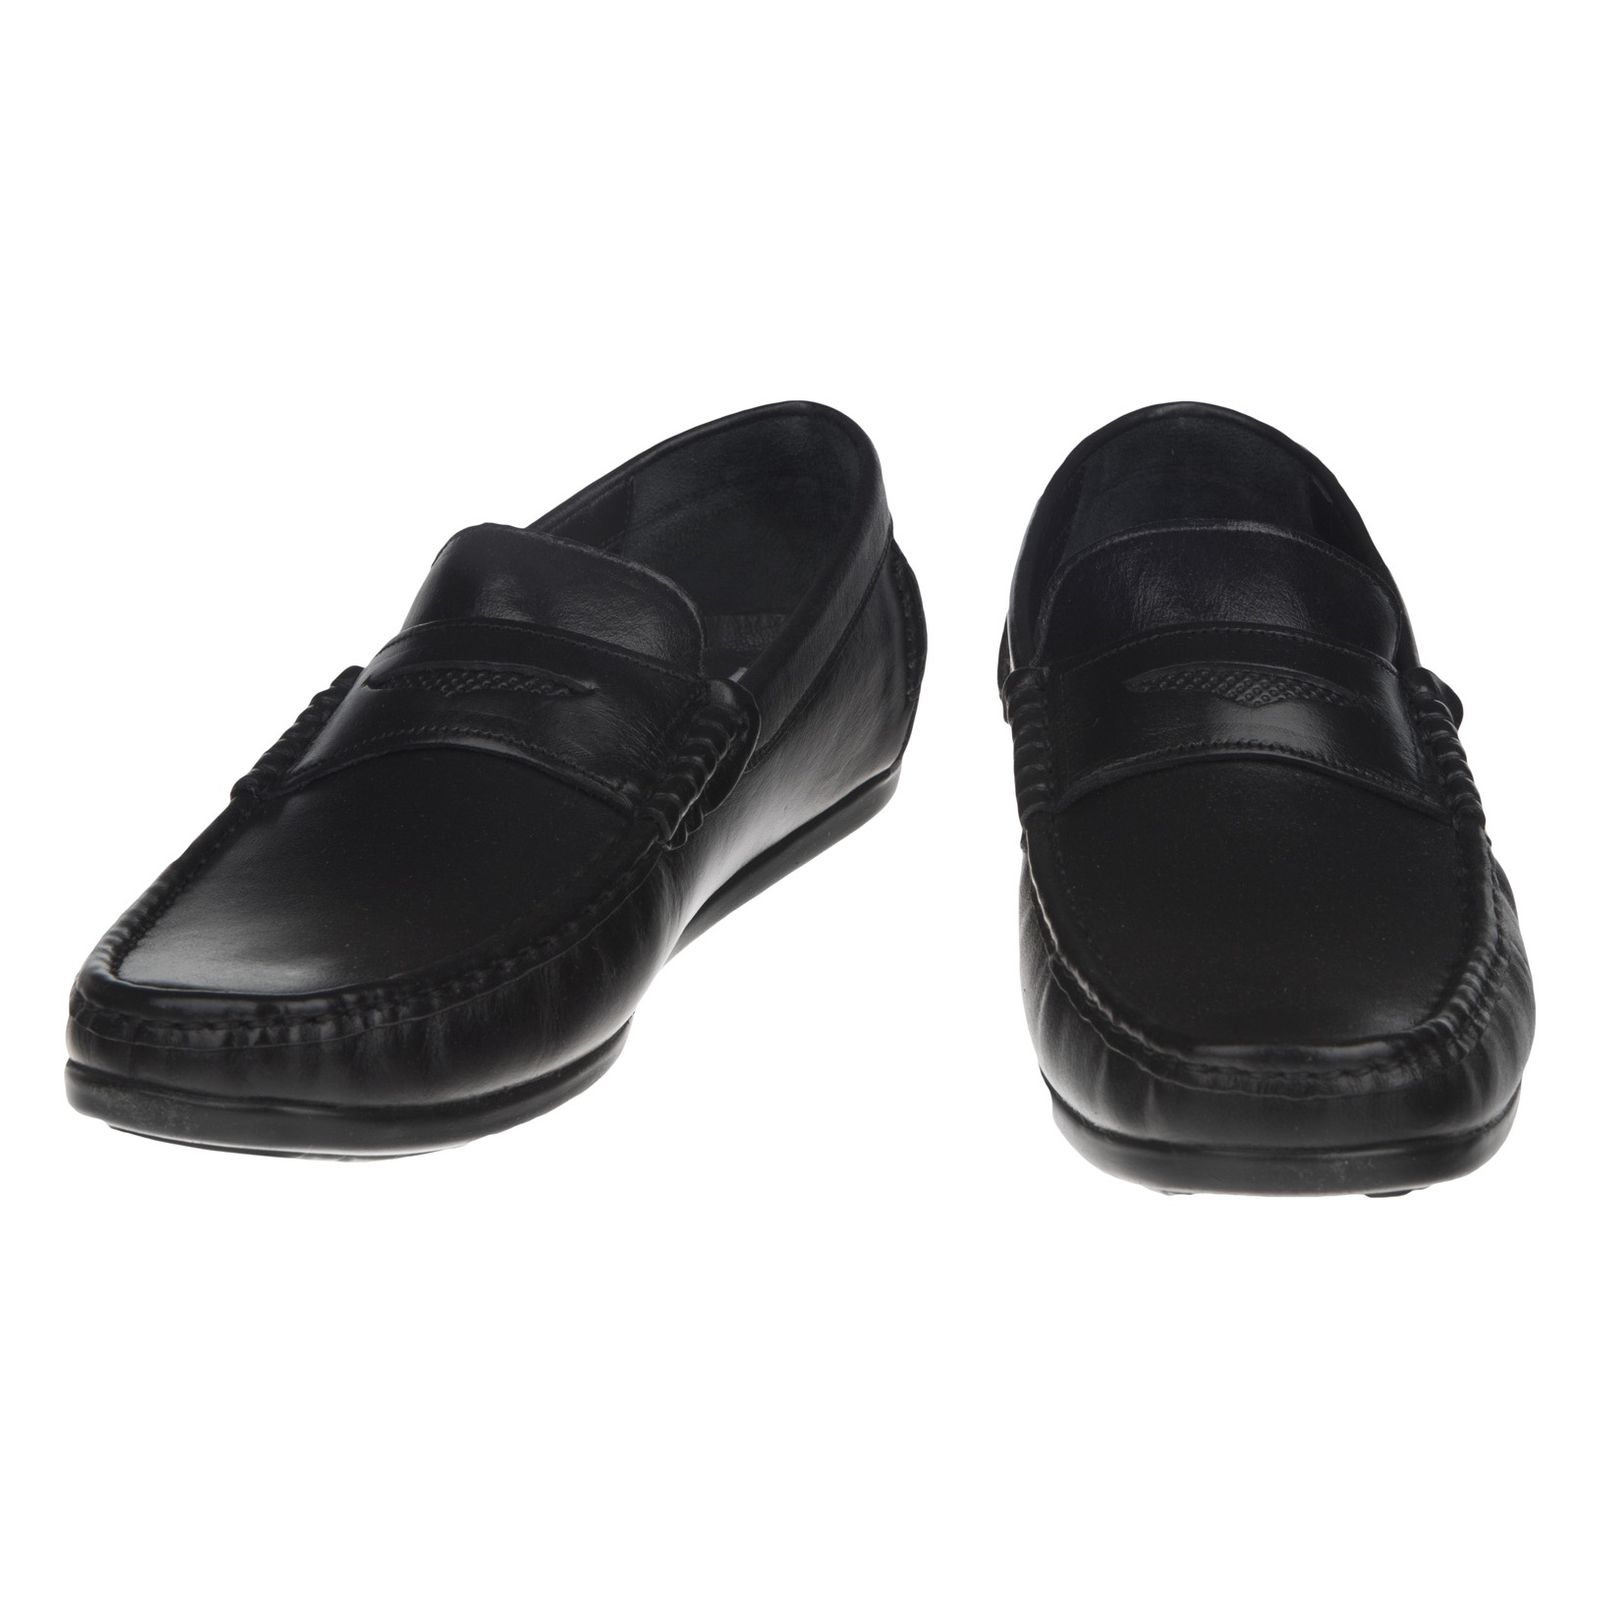 کفش روزمره مردانه بلوط مدل 7045D503-101 - مشکی - 4